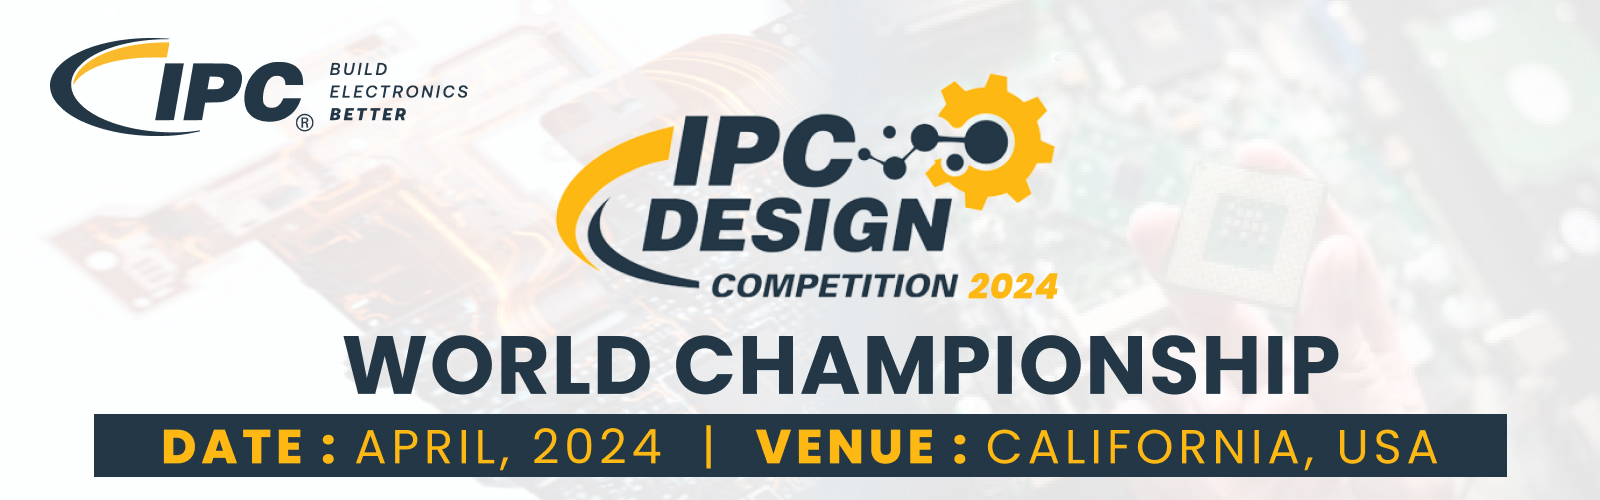 IPC PCB design world championship nov 2023 600x500.jpg